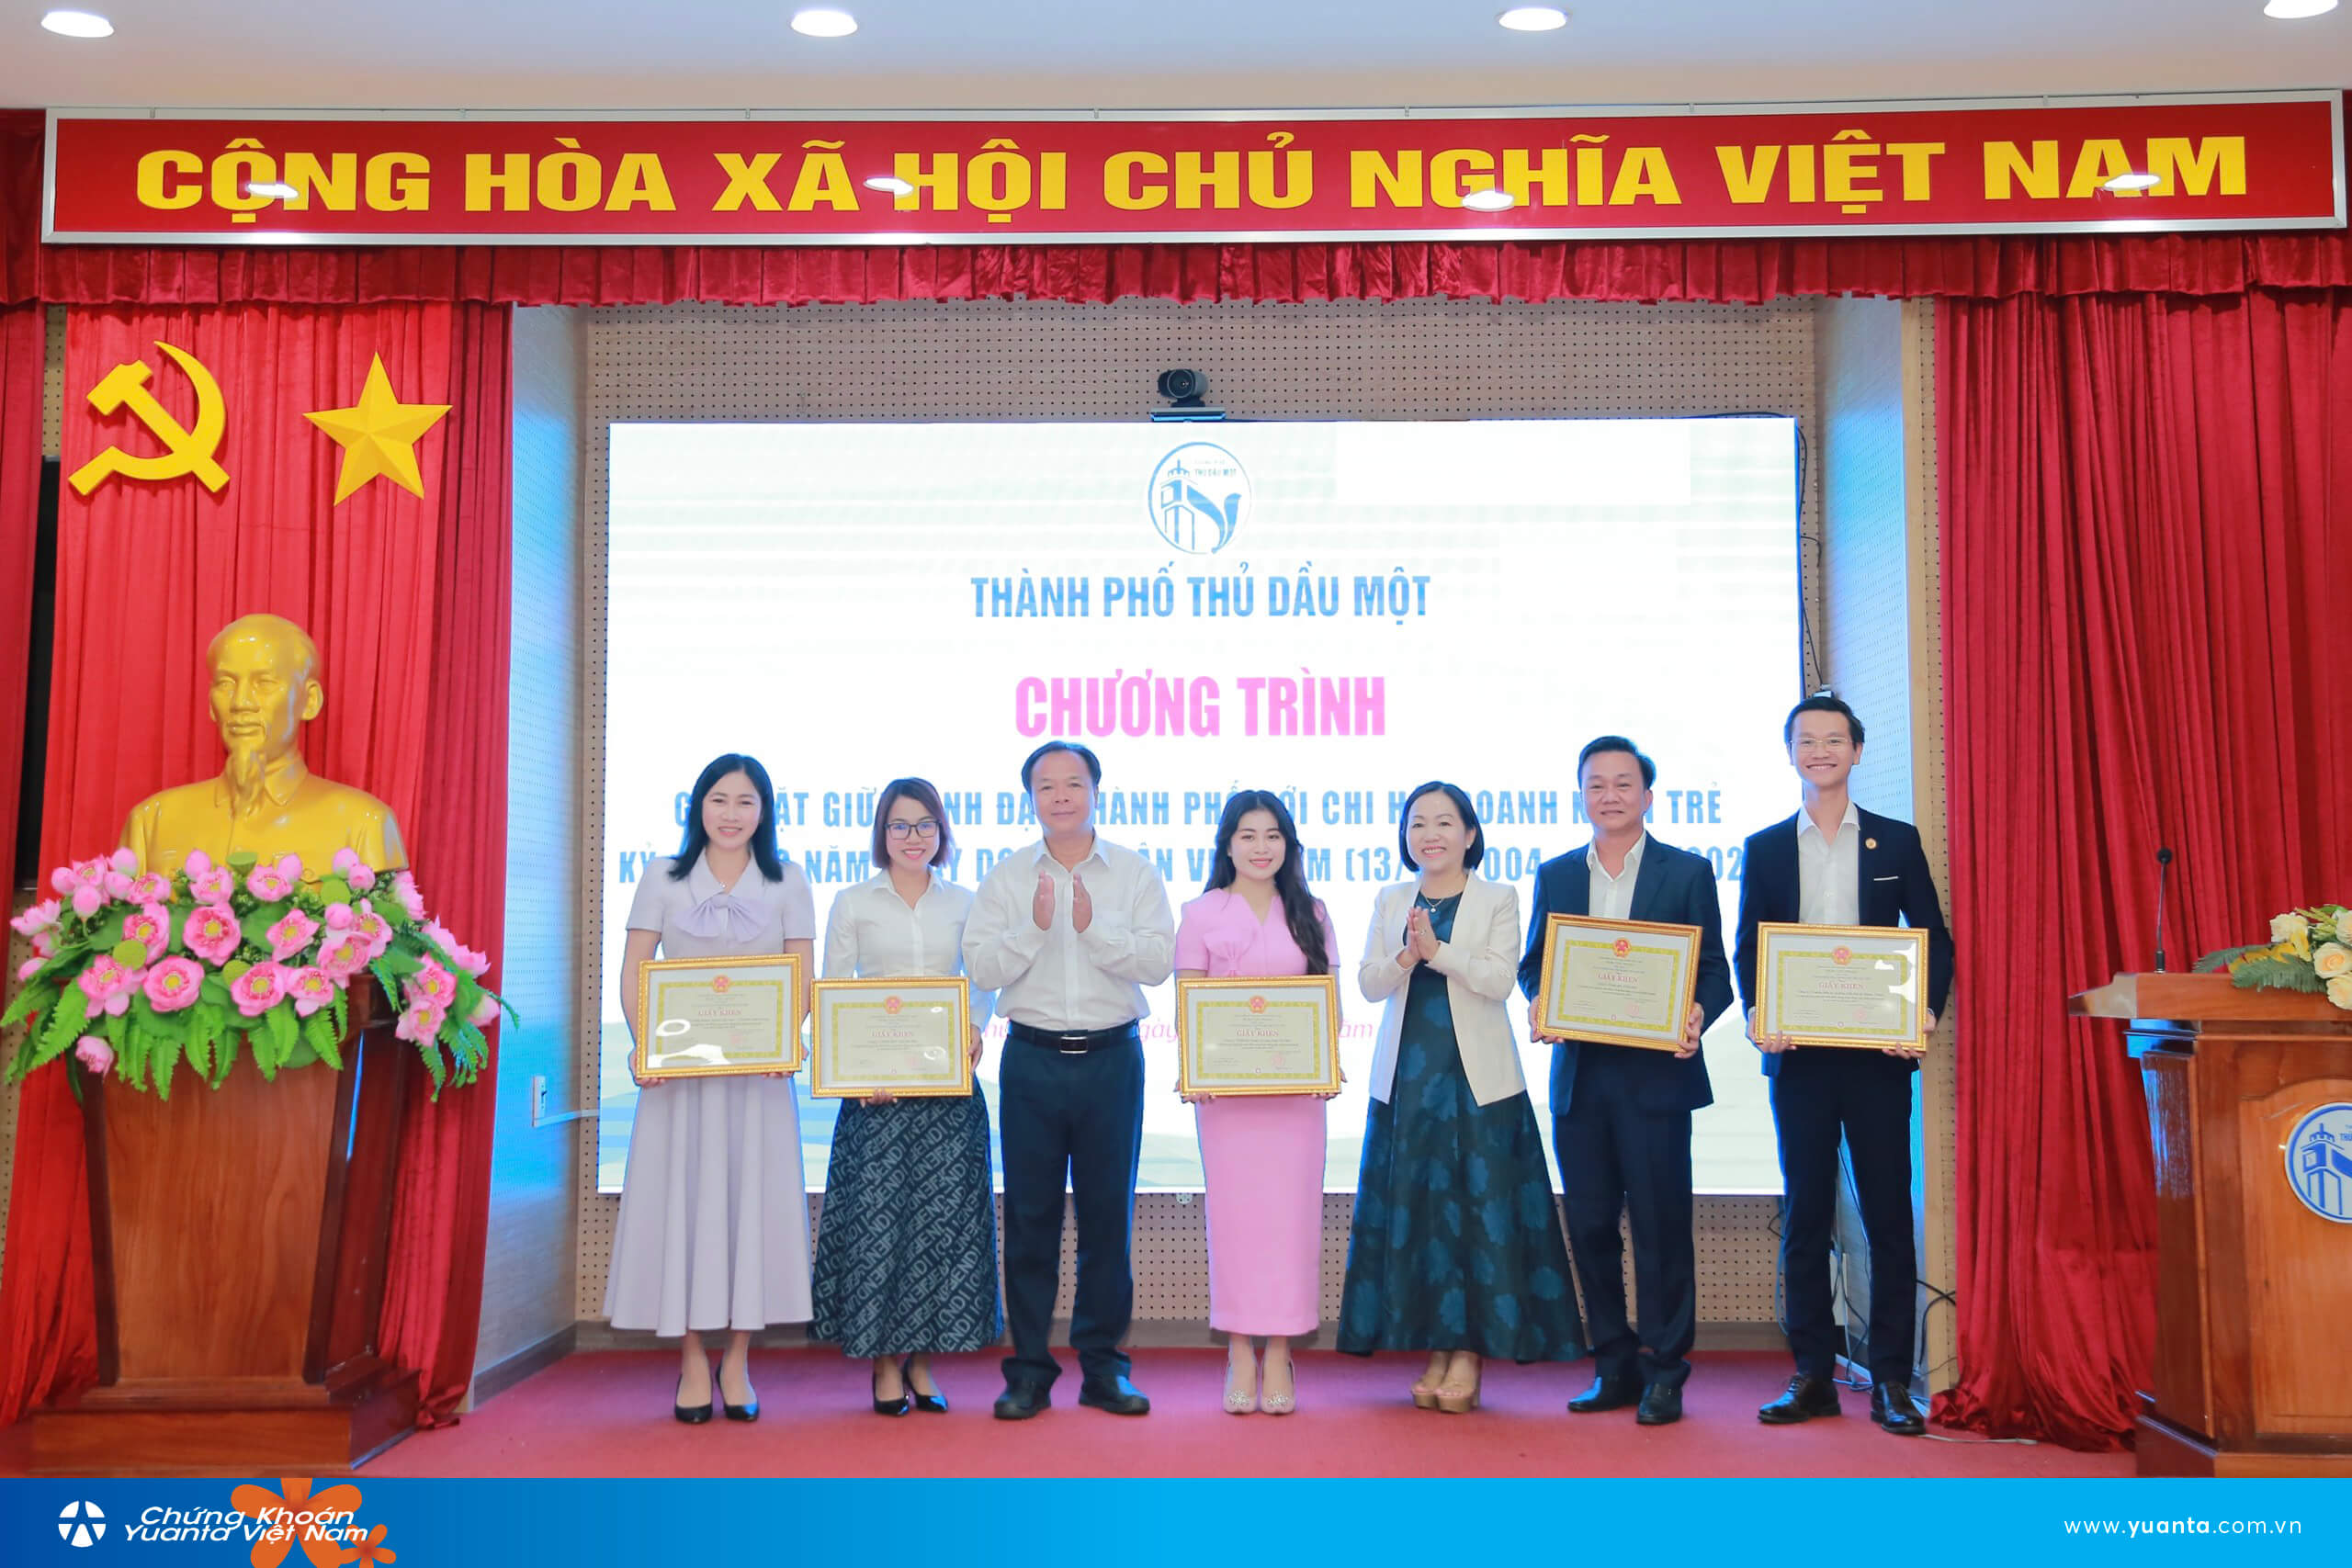 Đại diện Chứng khoán Yuanta Việt Nam Chi nhánh Bình Dương nhận bằng khen doanh nghiệp xuất sắc tiêu biểu do UBND Thành phố Thủ Dầu Một trao tặng vào ngày 05/10/2023 vừa qua.